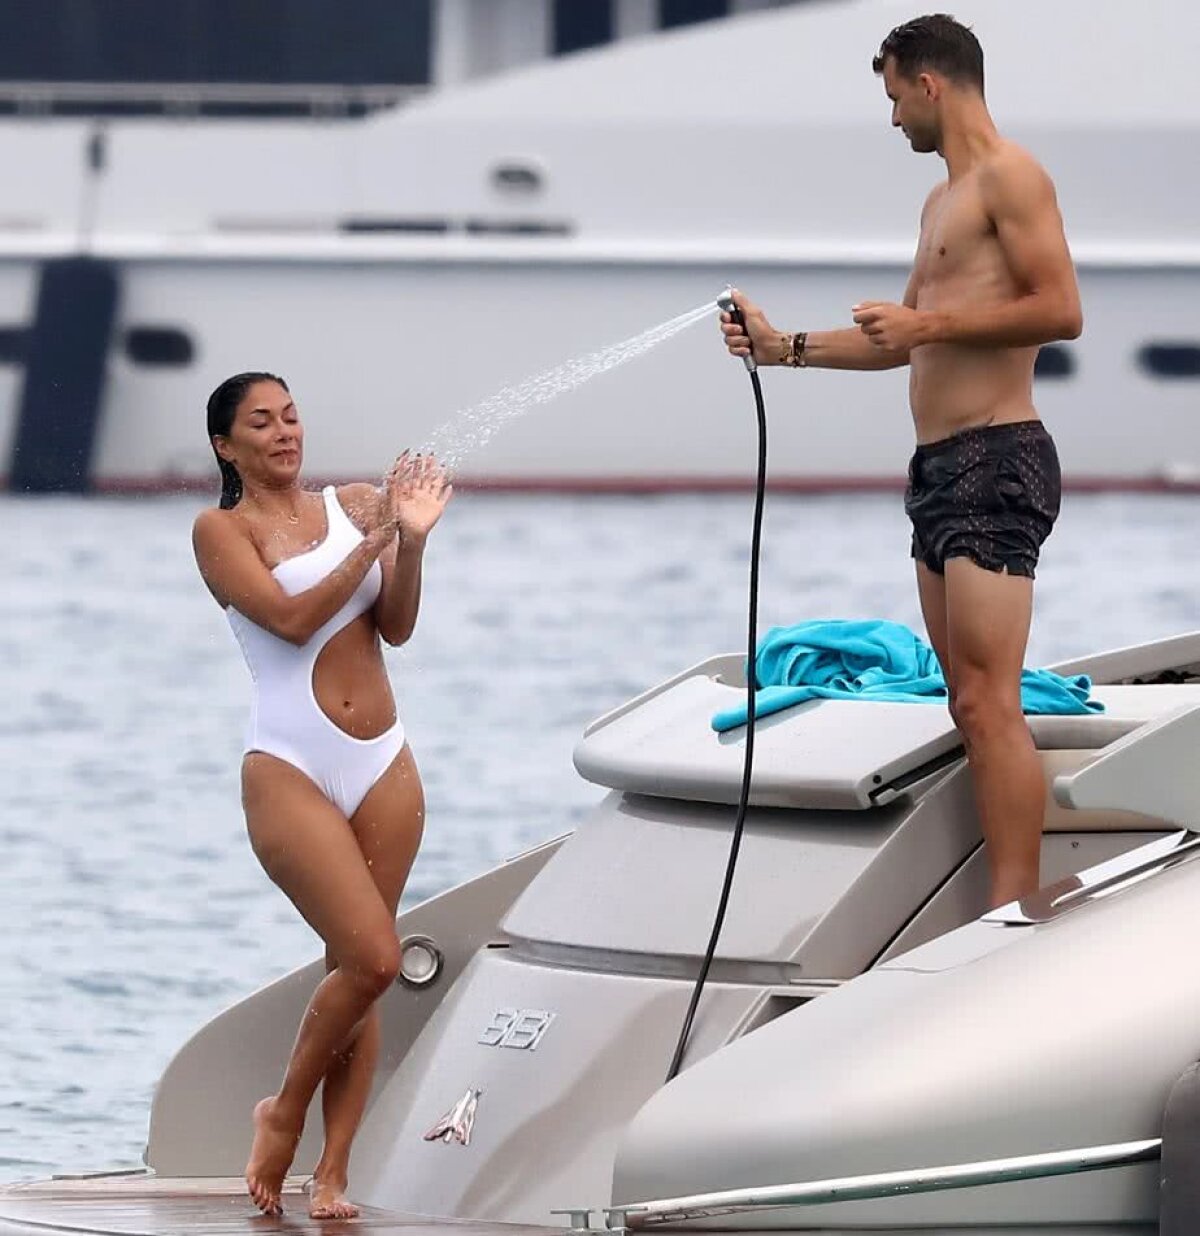 VIDEO + FOTO Imagini incendiare cu Dimitrov și Nicole Scherzinger » Ce au făcut cei doi pe yacht în Saint Tropez